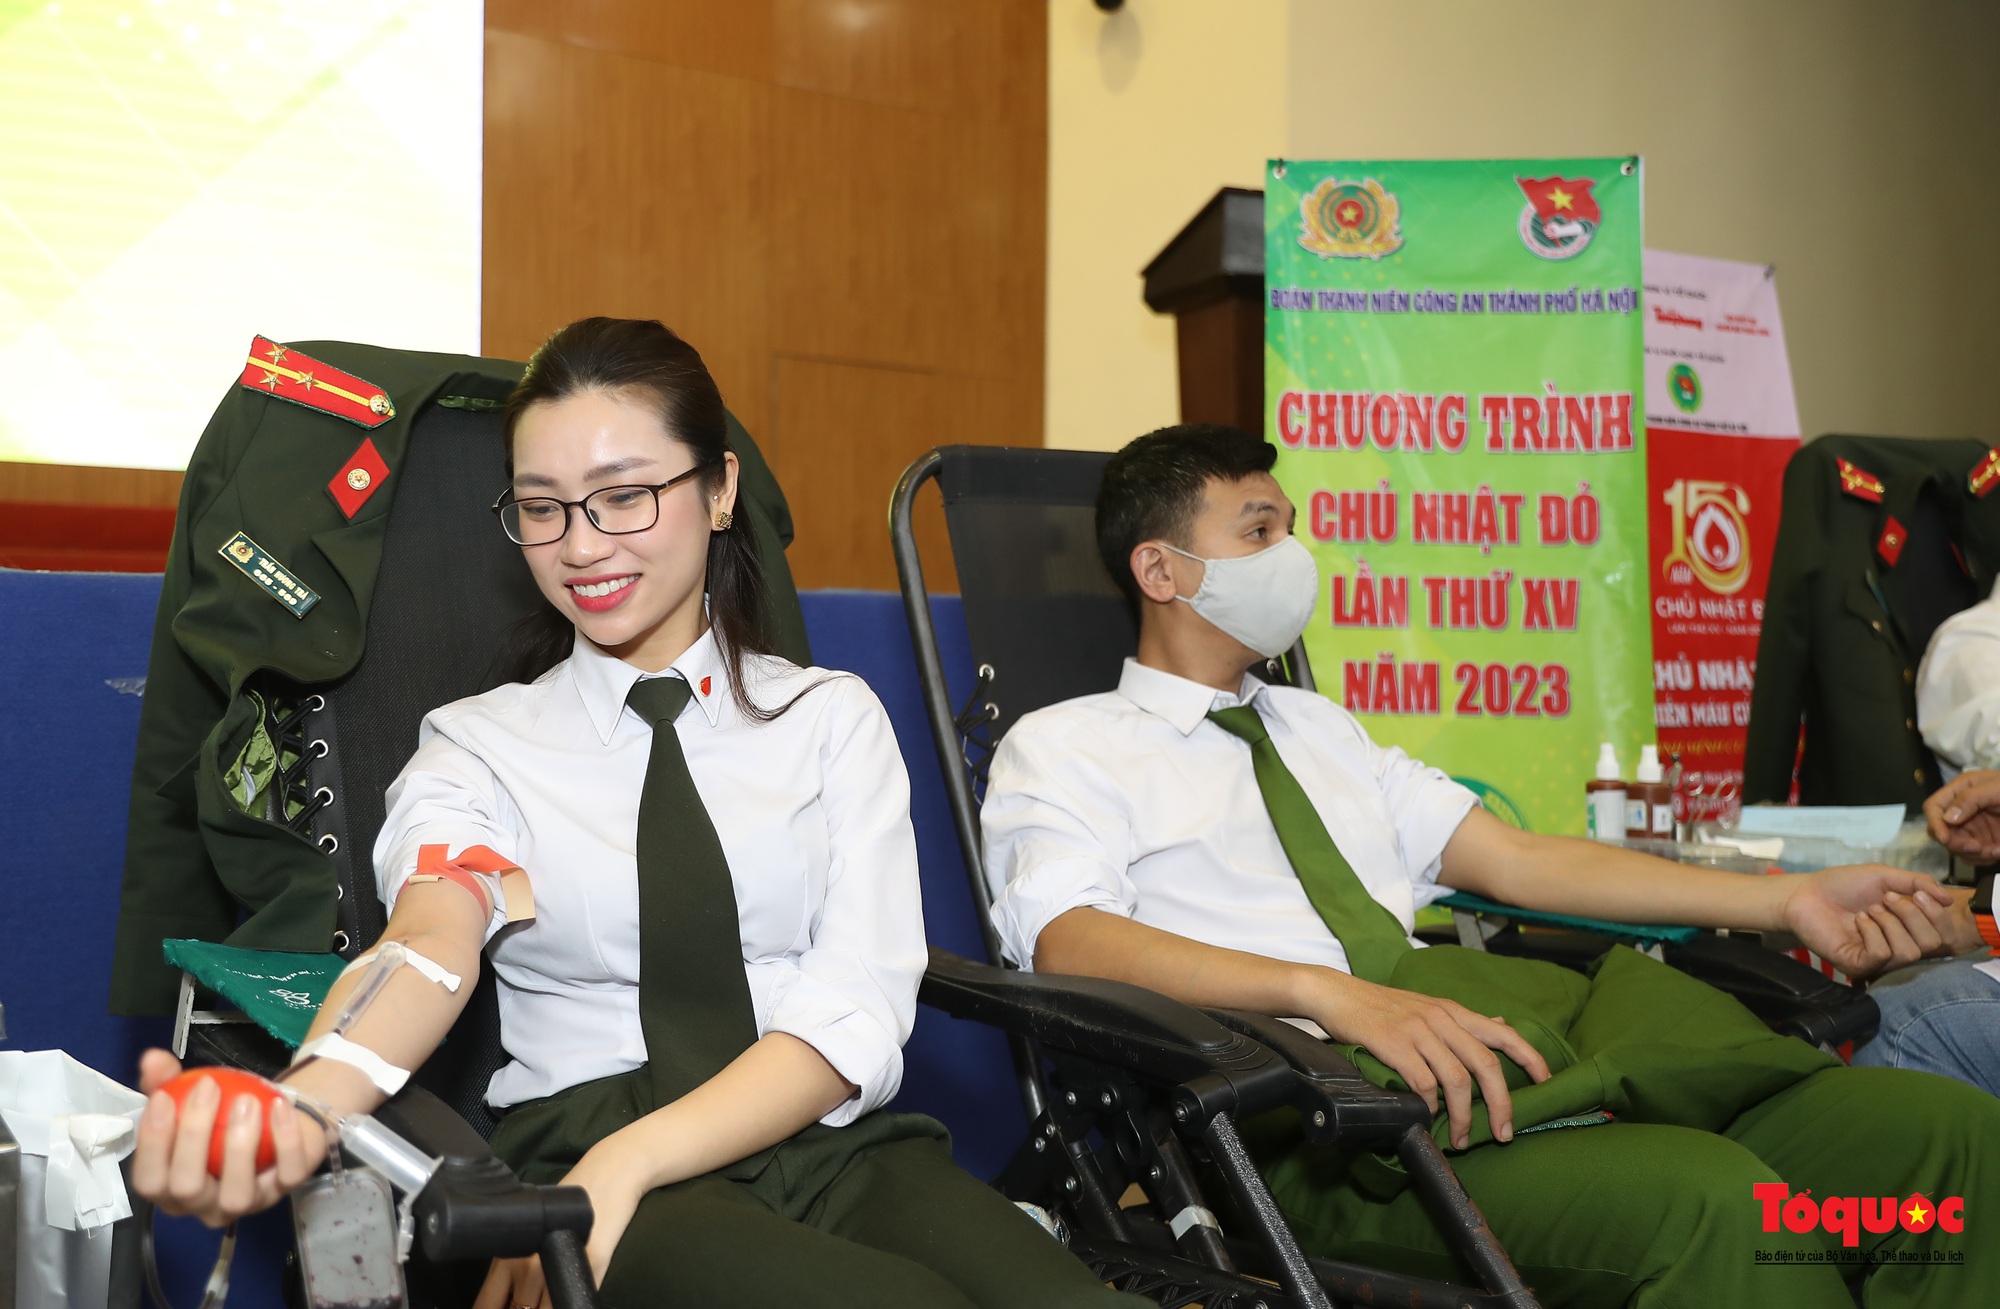 Tuổi trẻ Công an Thủ đô hiến máu cứu người trong những ngày đầu năm mới 2023 - Ảnh 7.